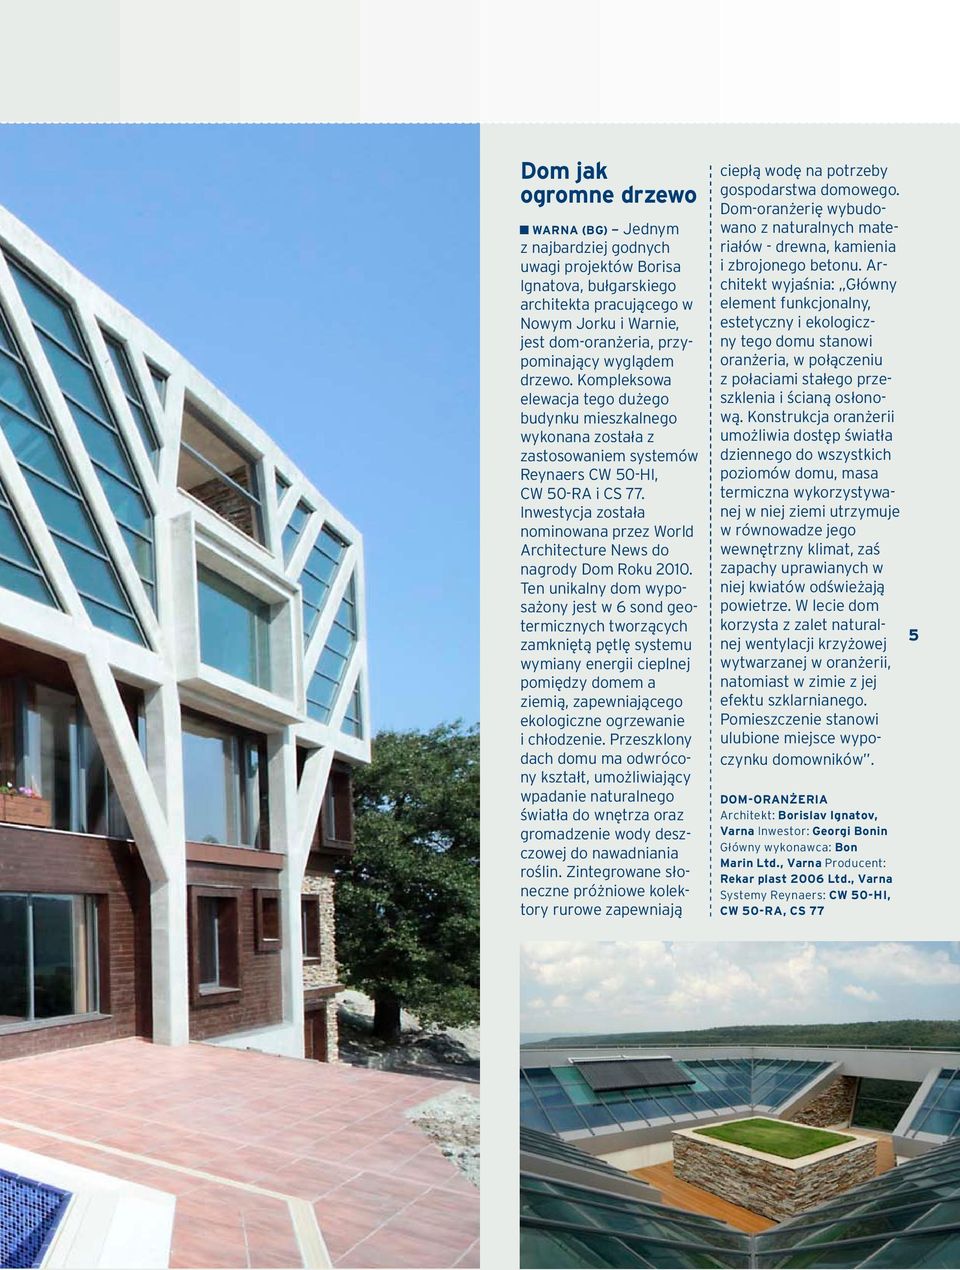 Inwestycja została nominowana przez World Architecture News do nagrody Dom Roku 2010.